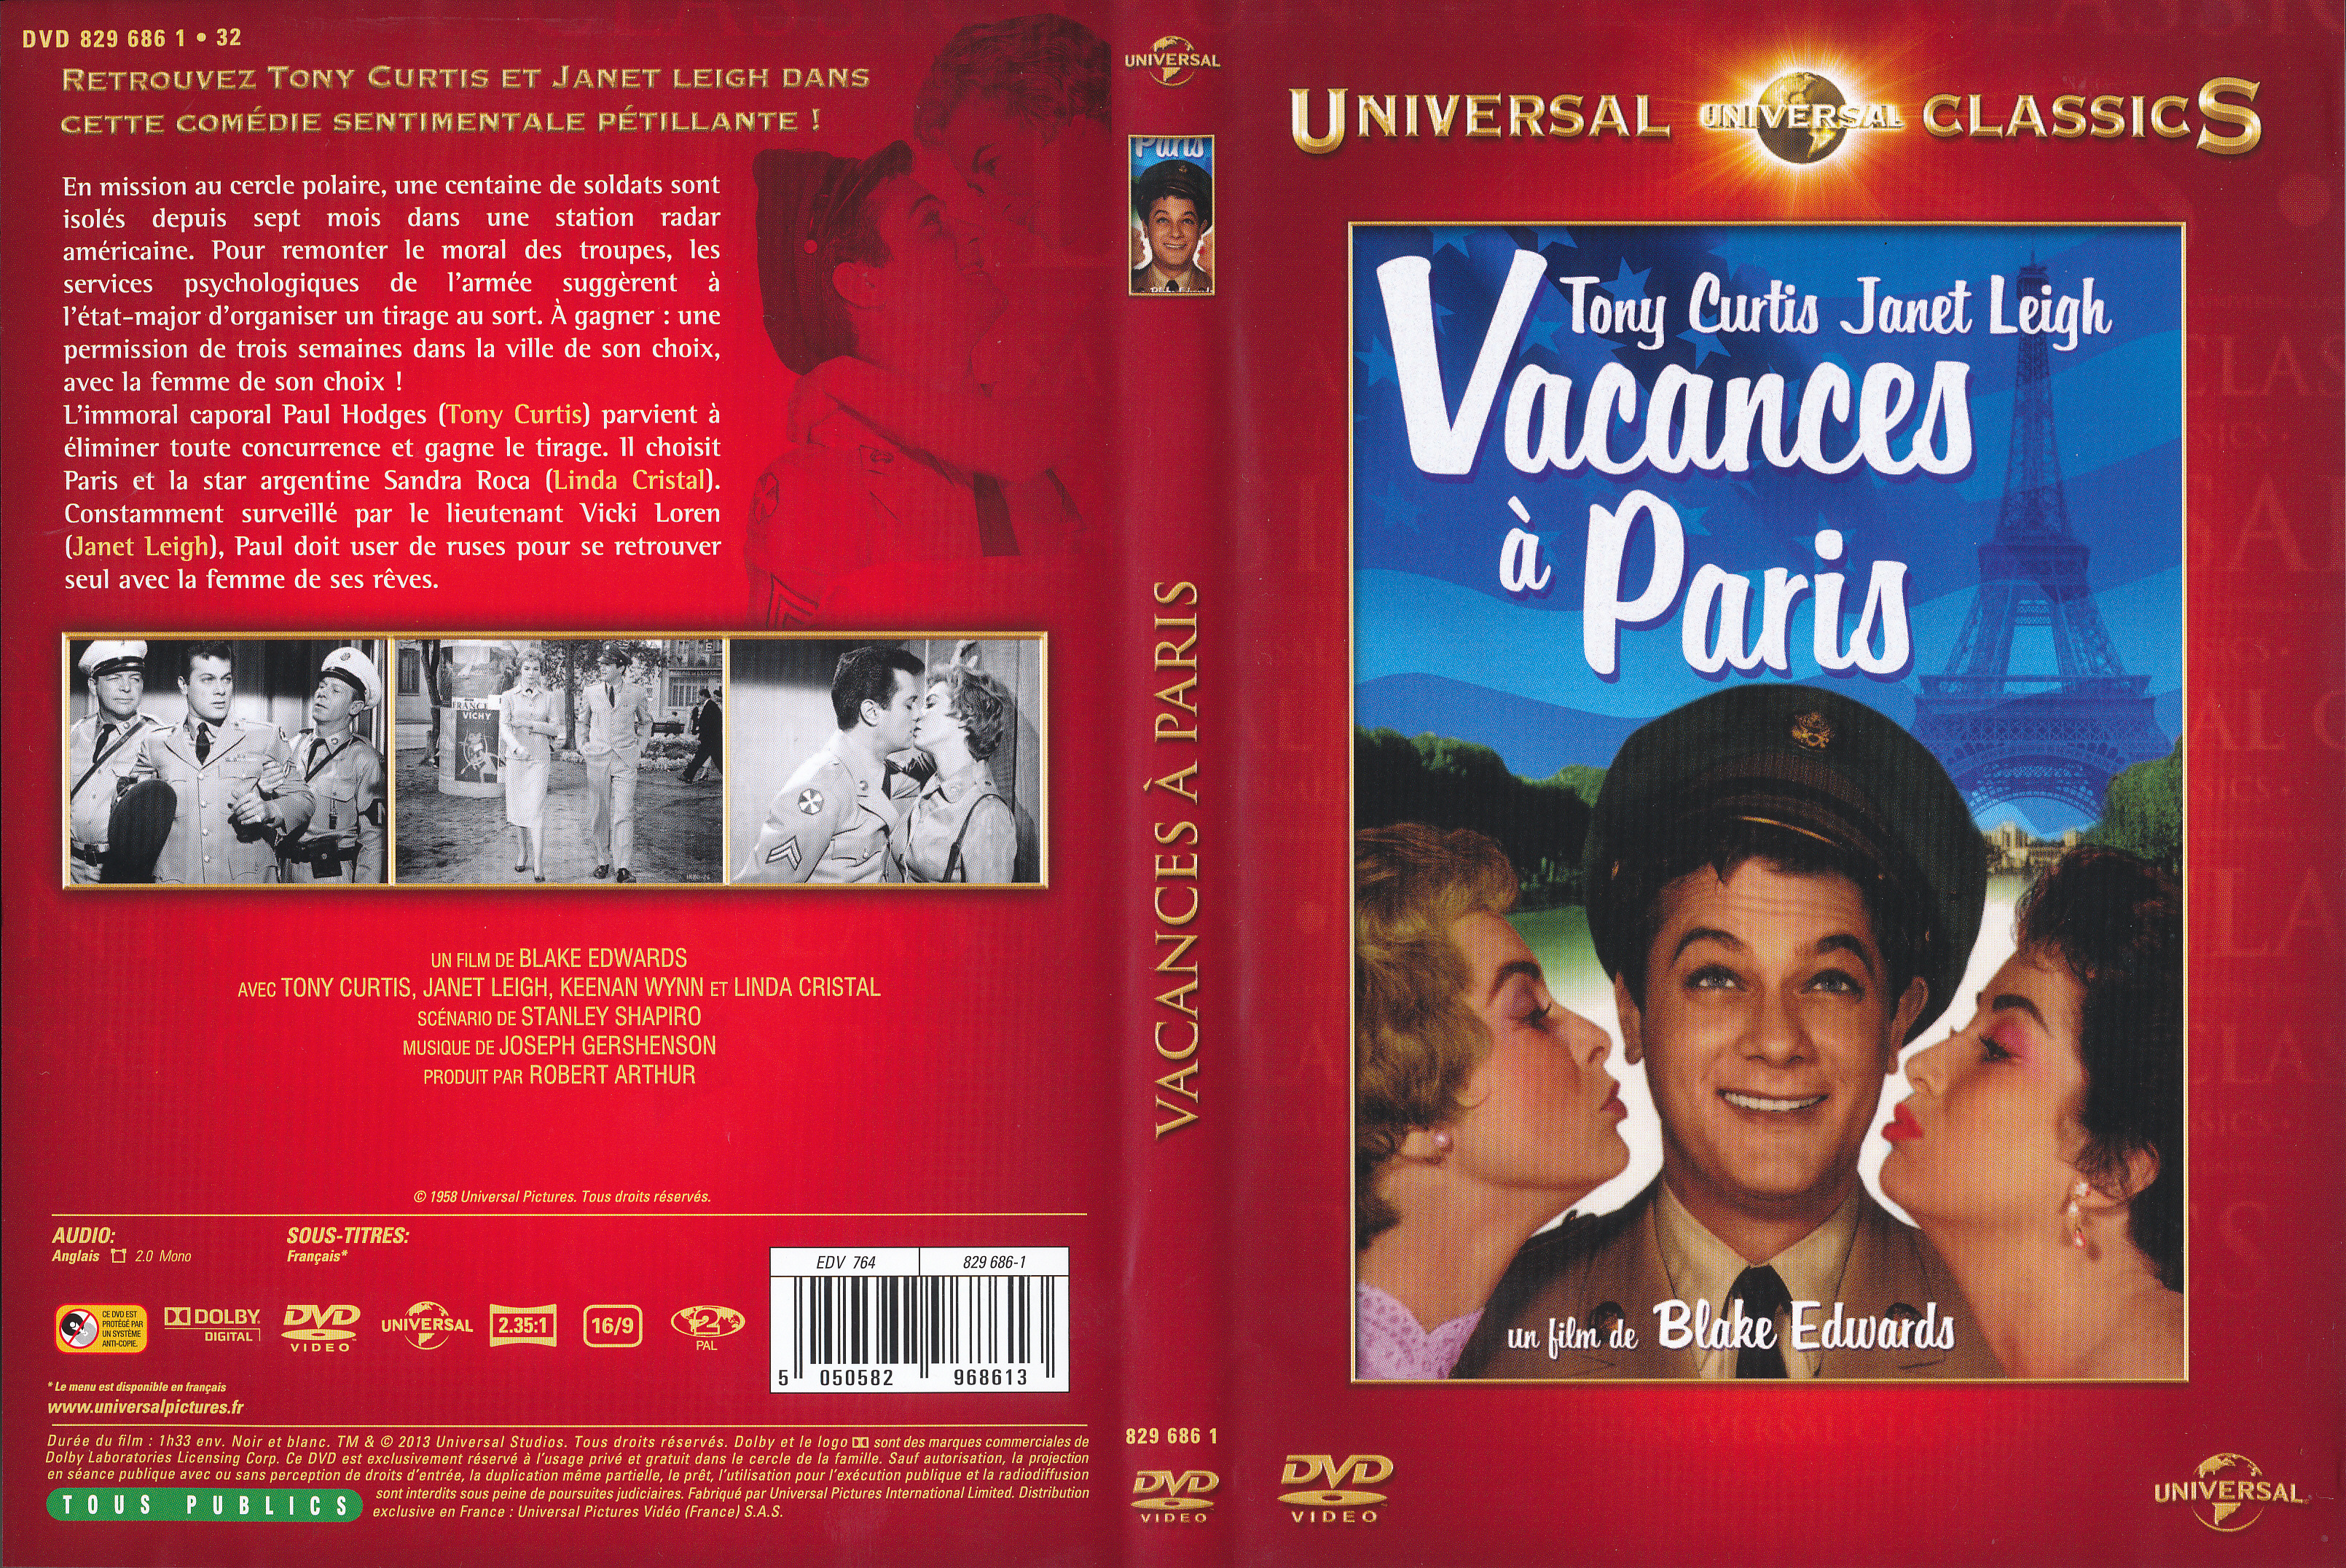 Jaquette DVD Vacances  Paris